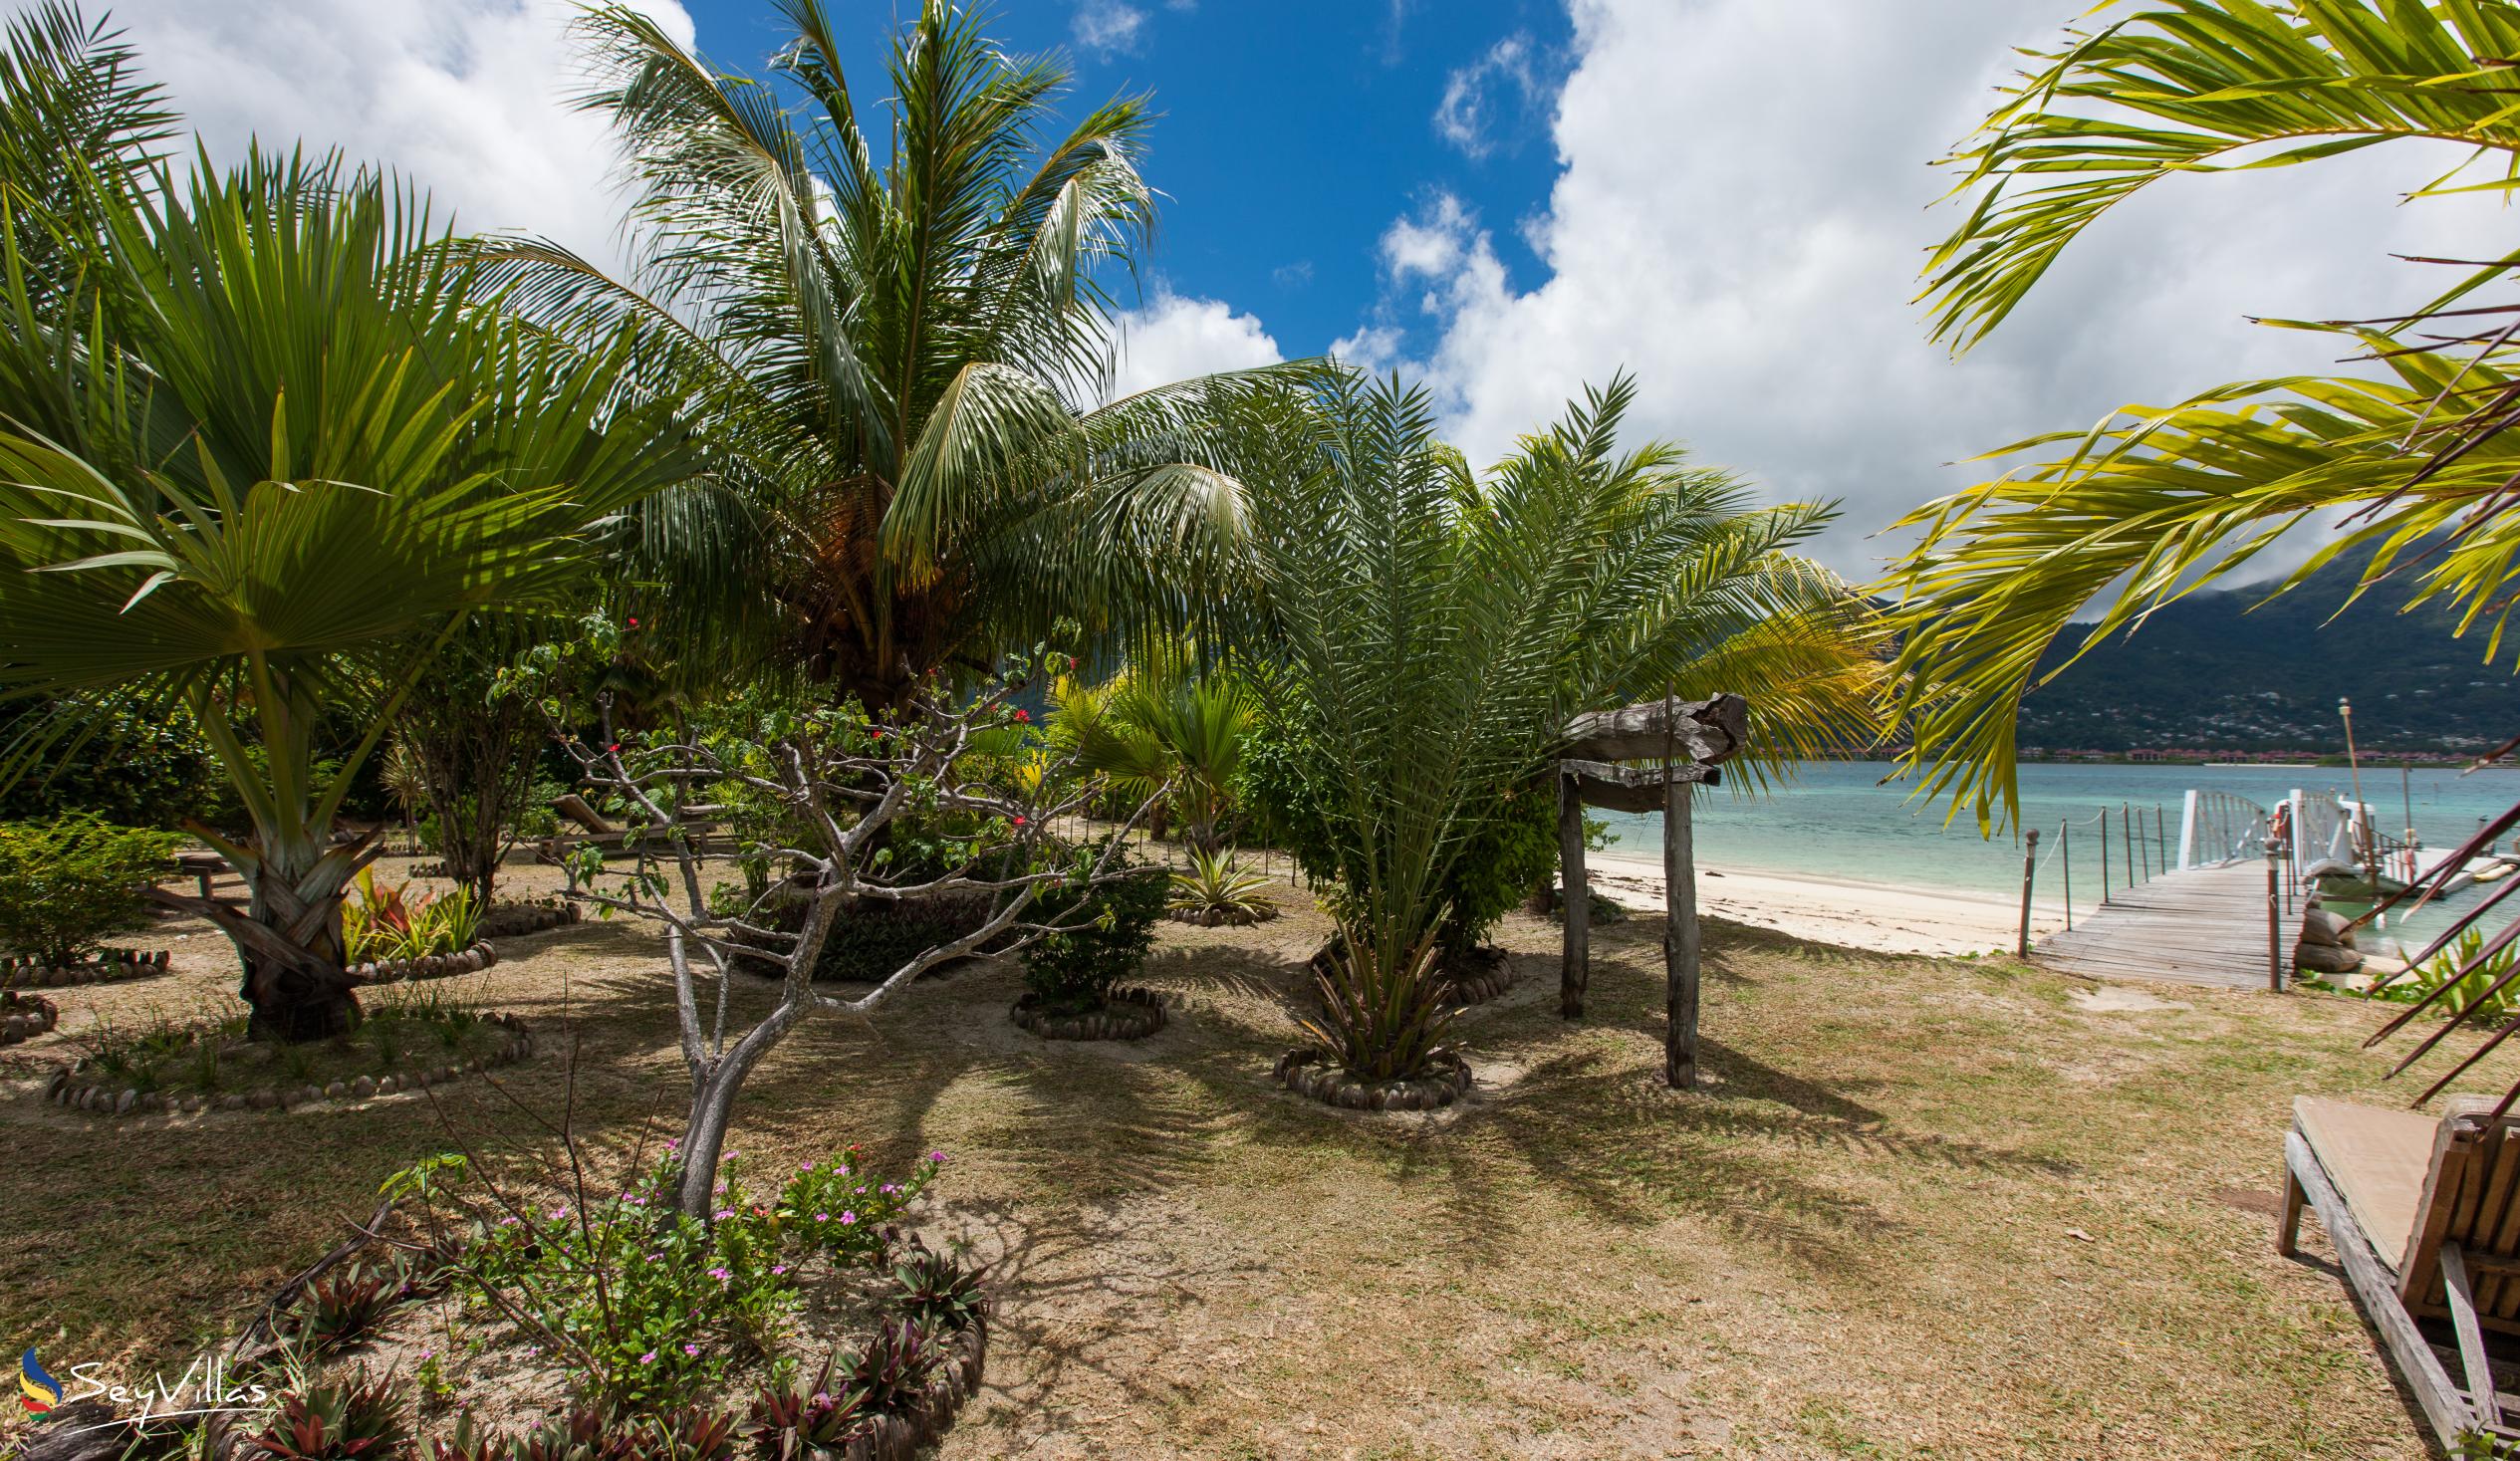 Foto 14: Villa de Cerf - Extérieur - Cerf Island (Seychelles)